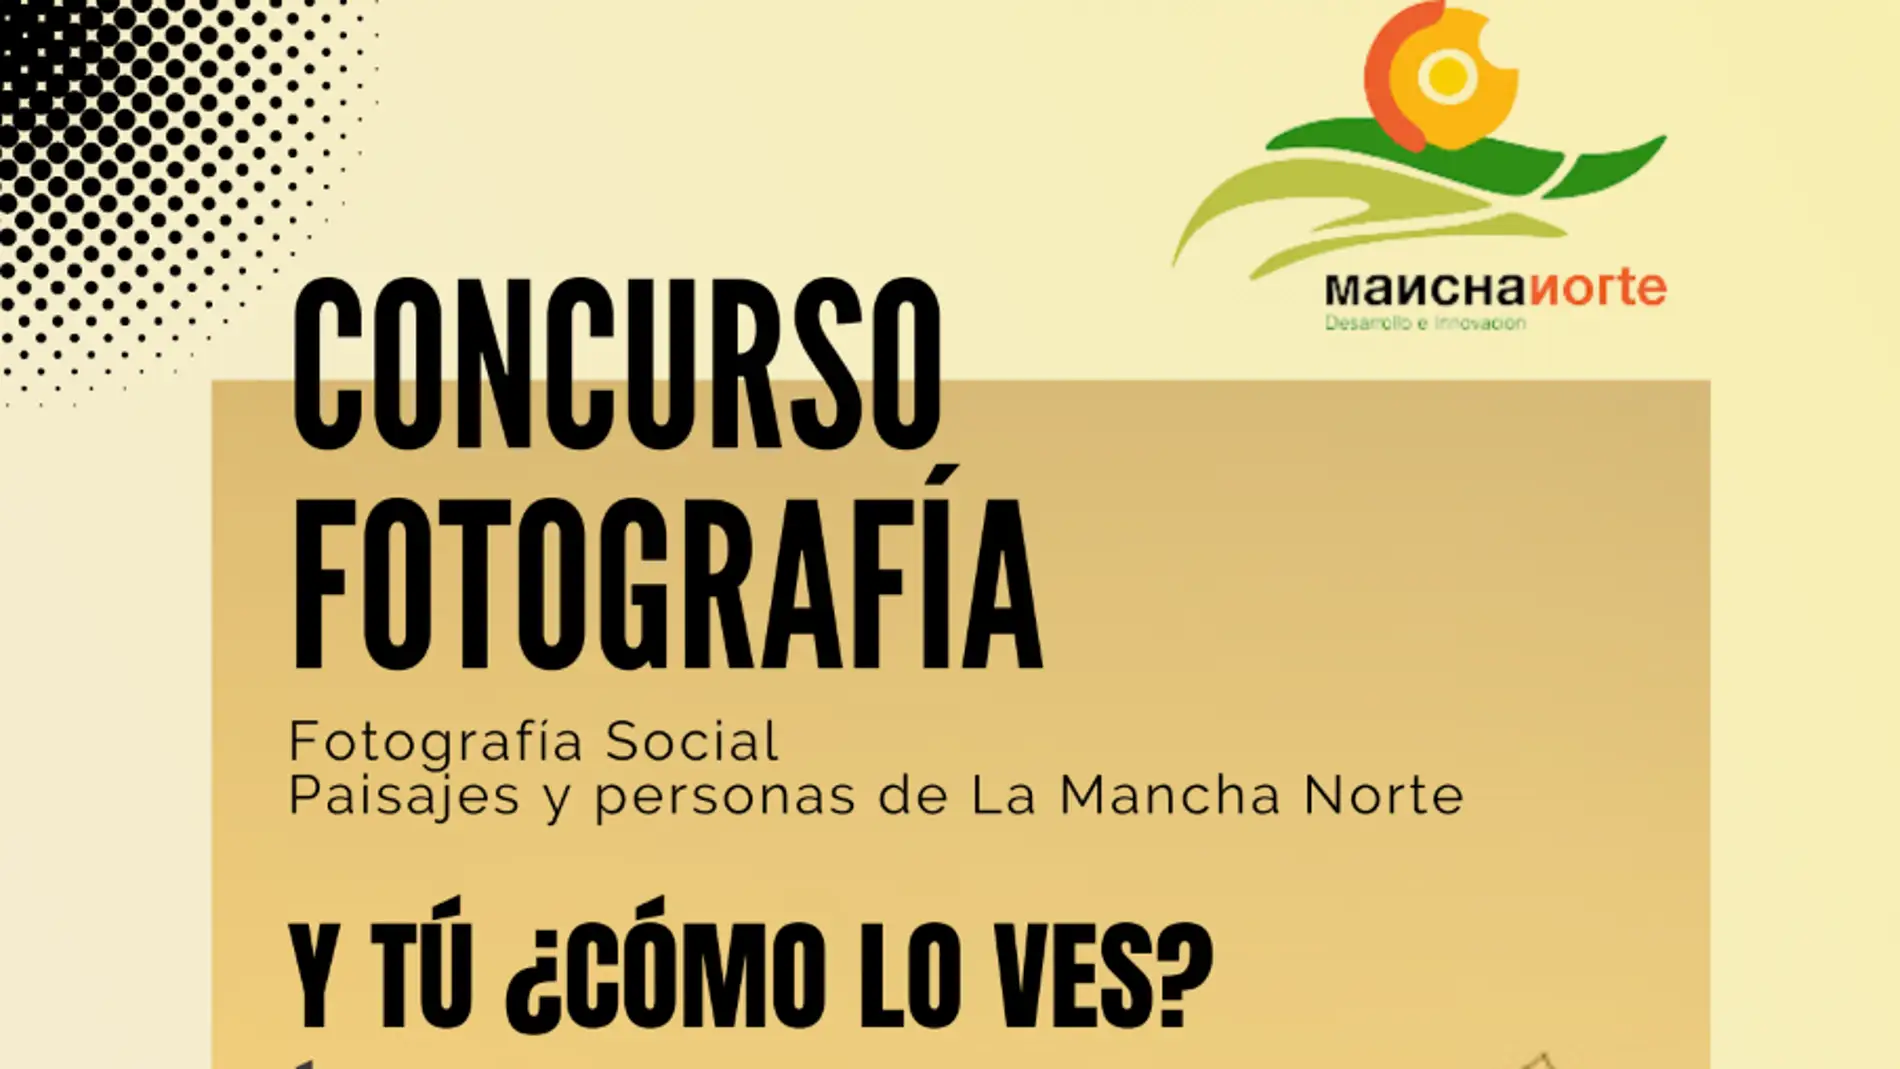 sin embargo web Mentalidad El grupo de desarrollo local Mancha Norte presenta un concurso fotográfico  | Onda Cero Radio